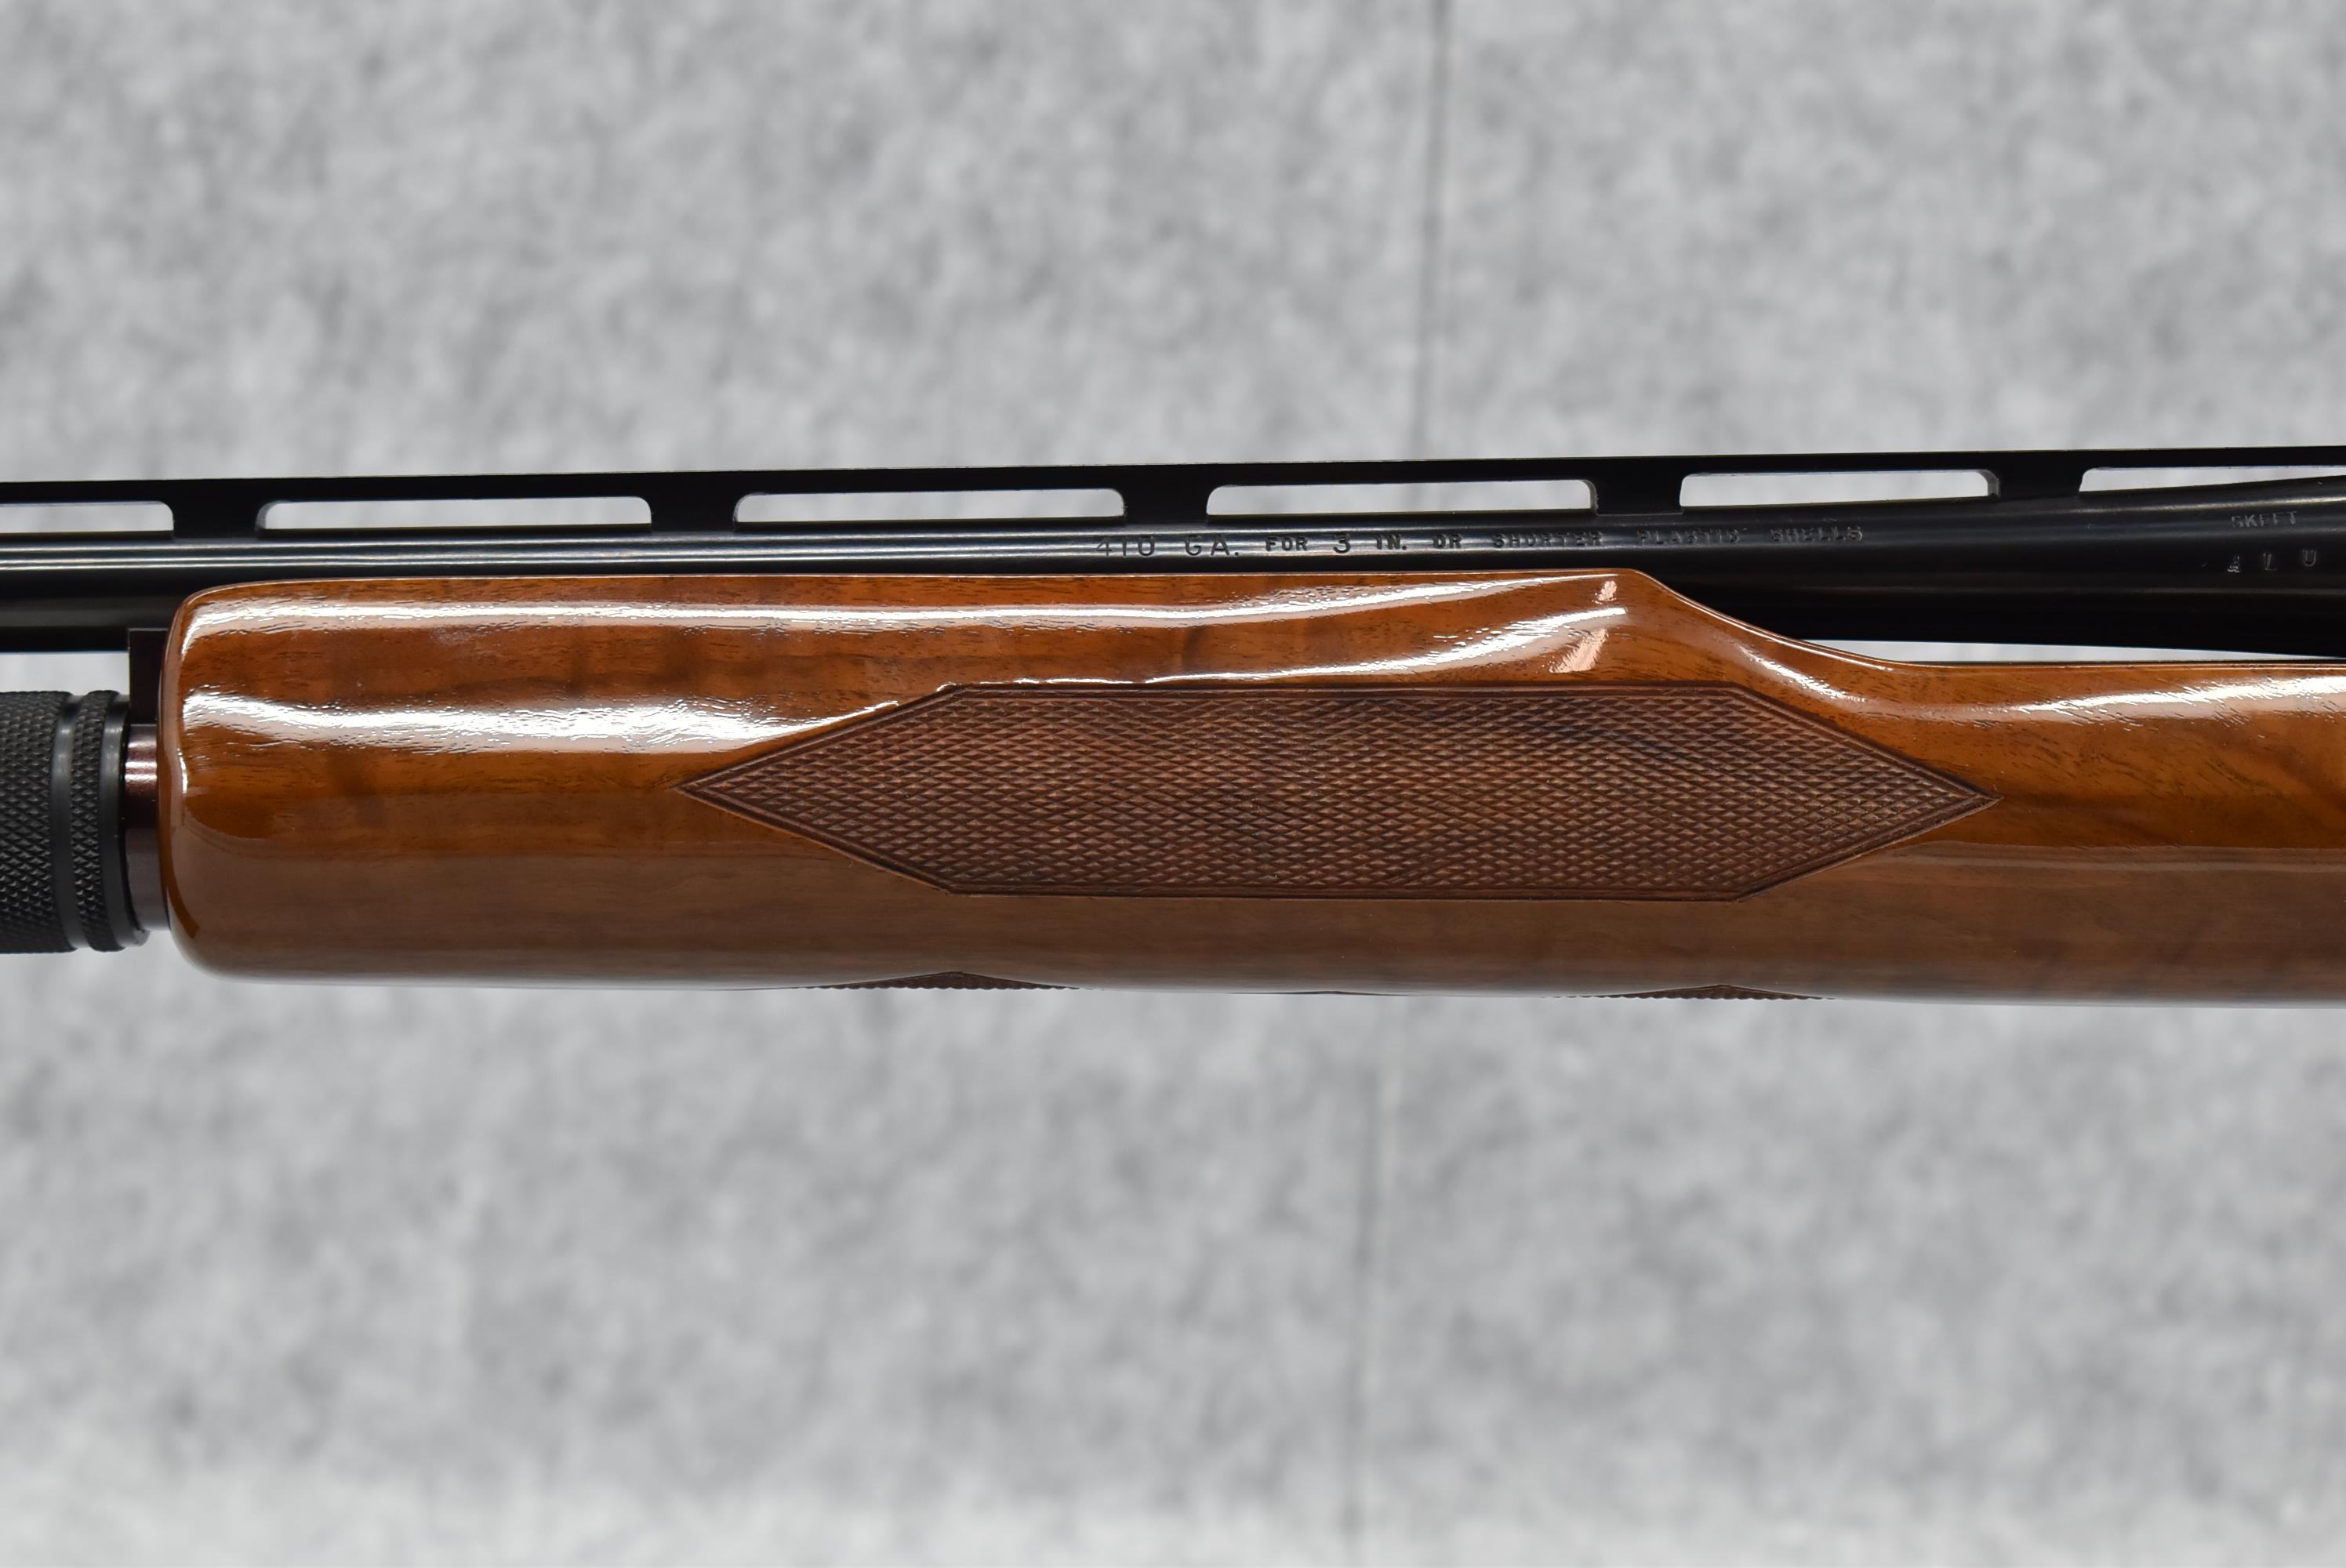 Remington – Mod. 870 Wingmaster – 410ga. 3” Pump Action Shotgun